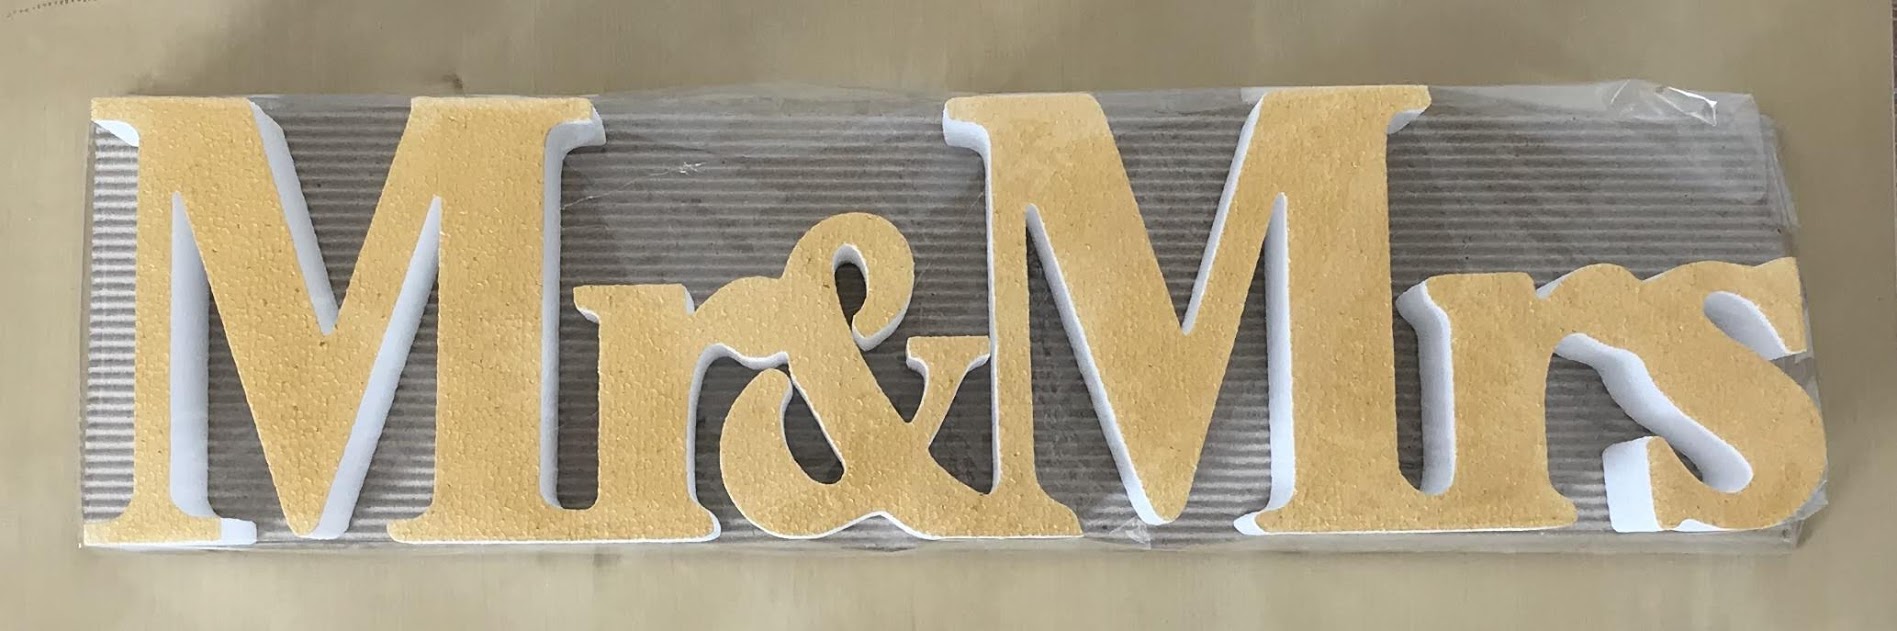 MR & MRS napis iz stiroporja za dekoracijo.